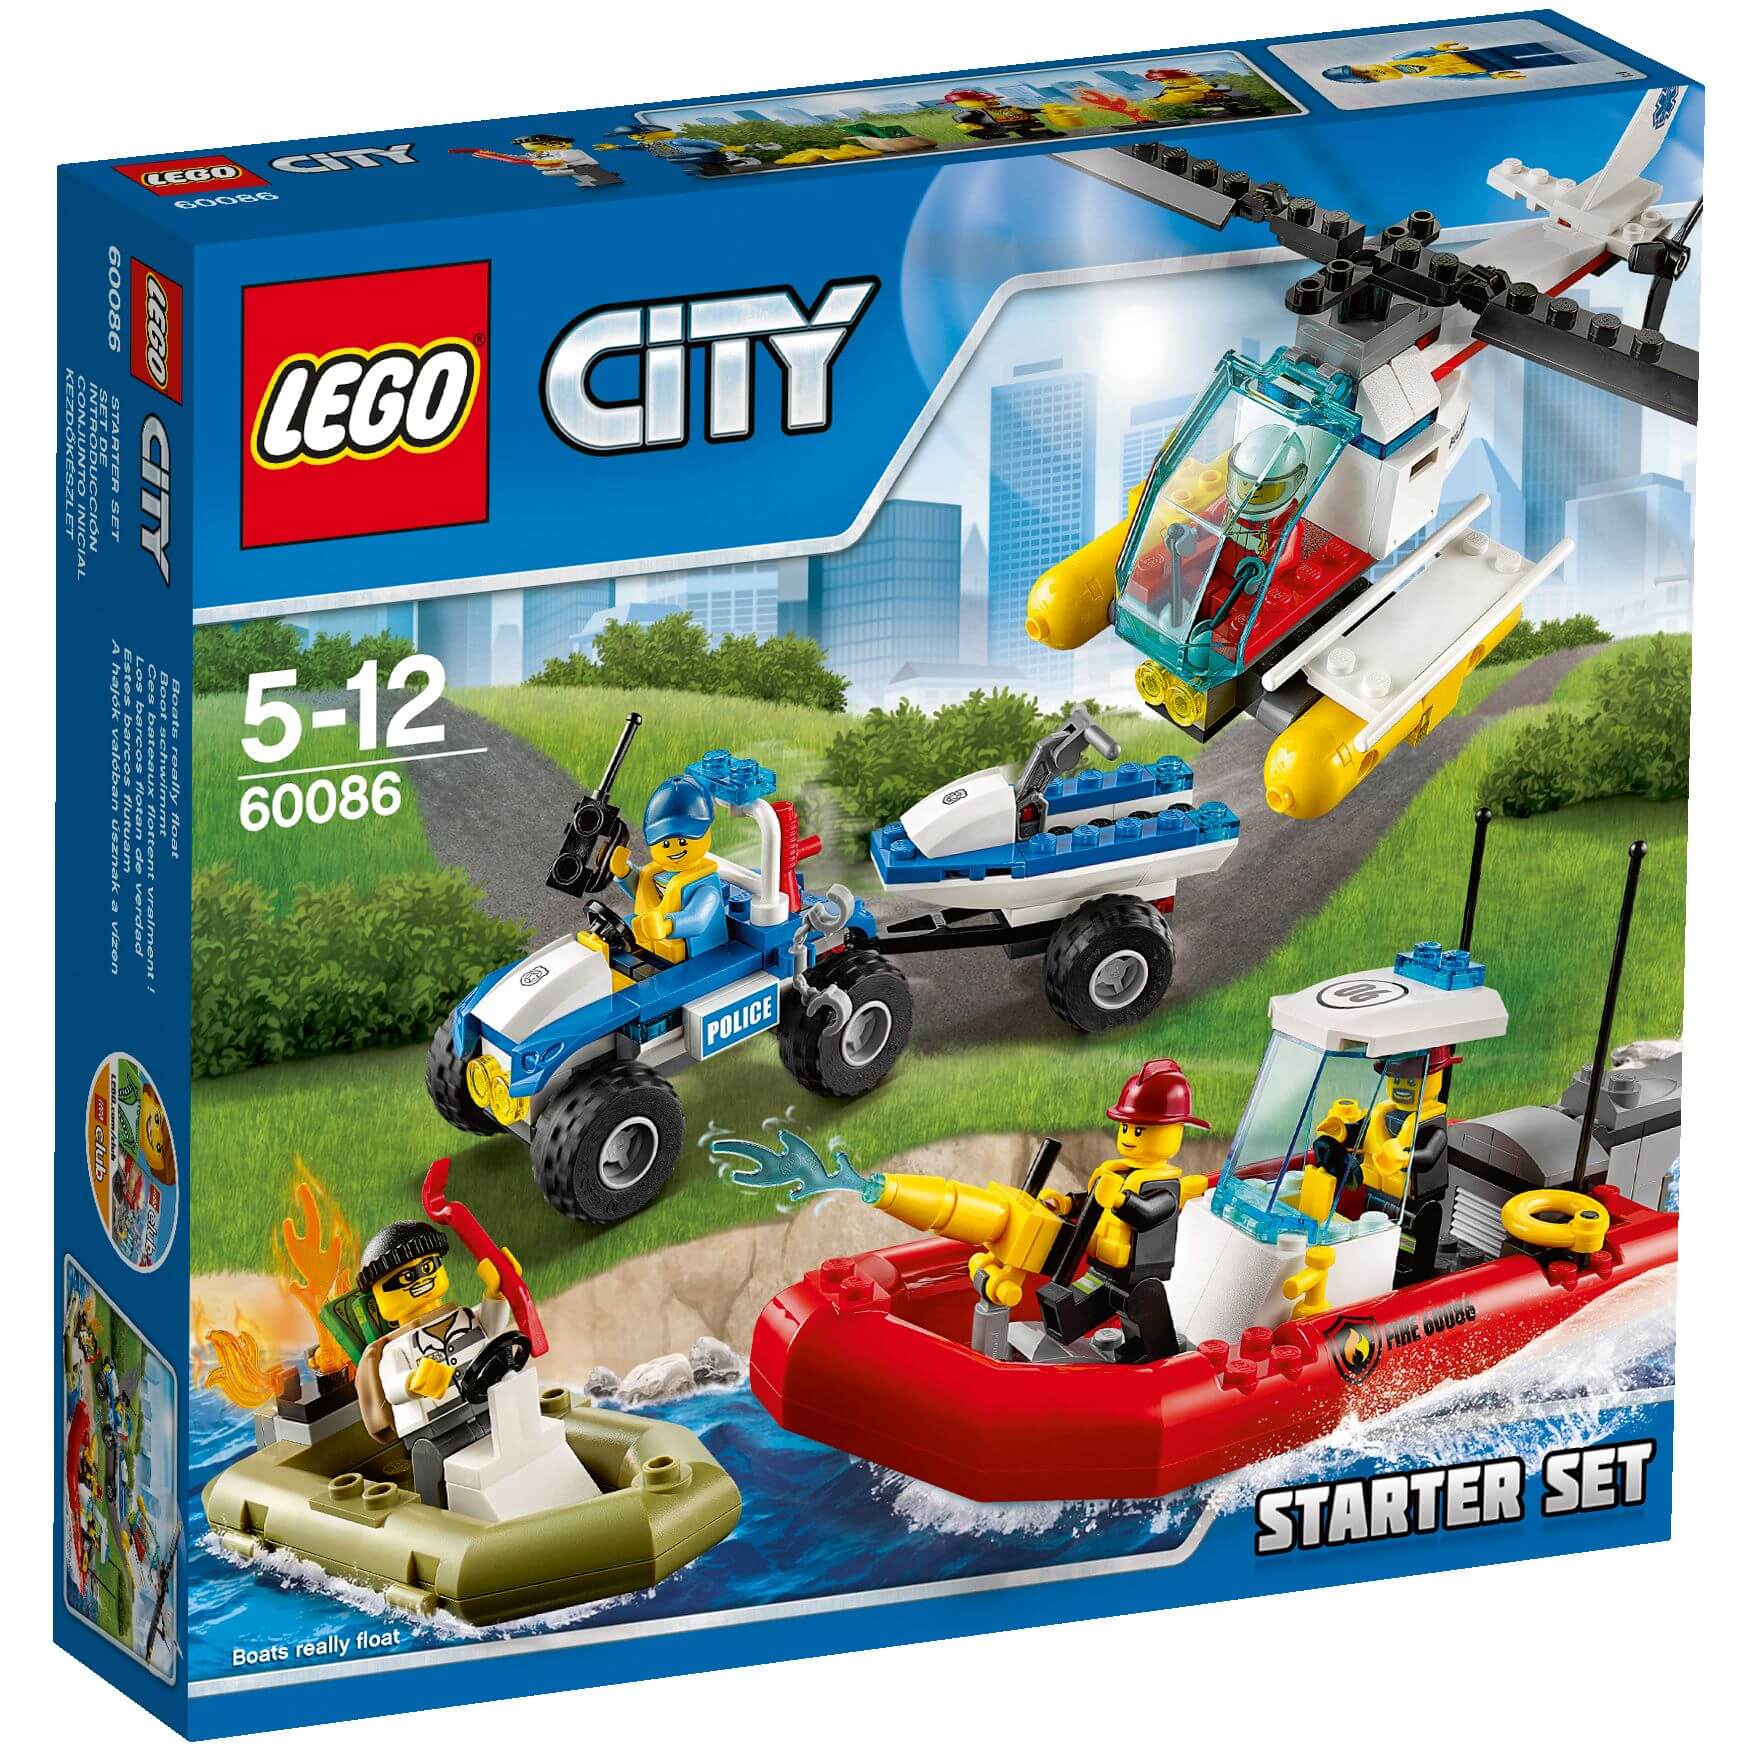  Set de constructie LEGO City - Set pentru incepatori 60086 